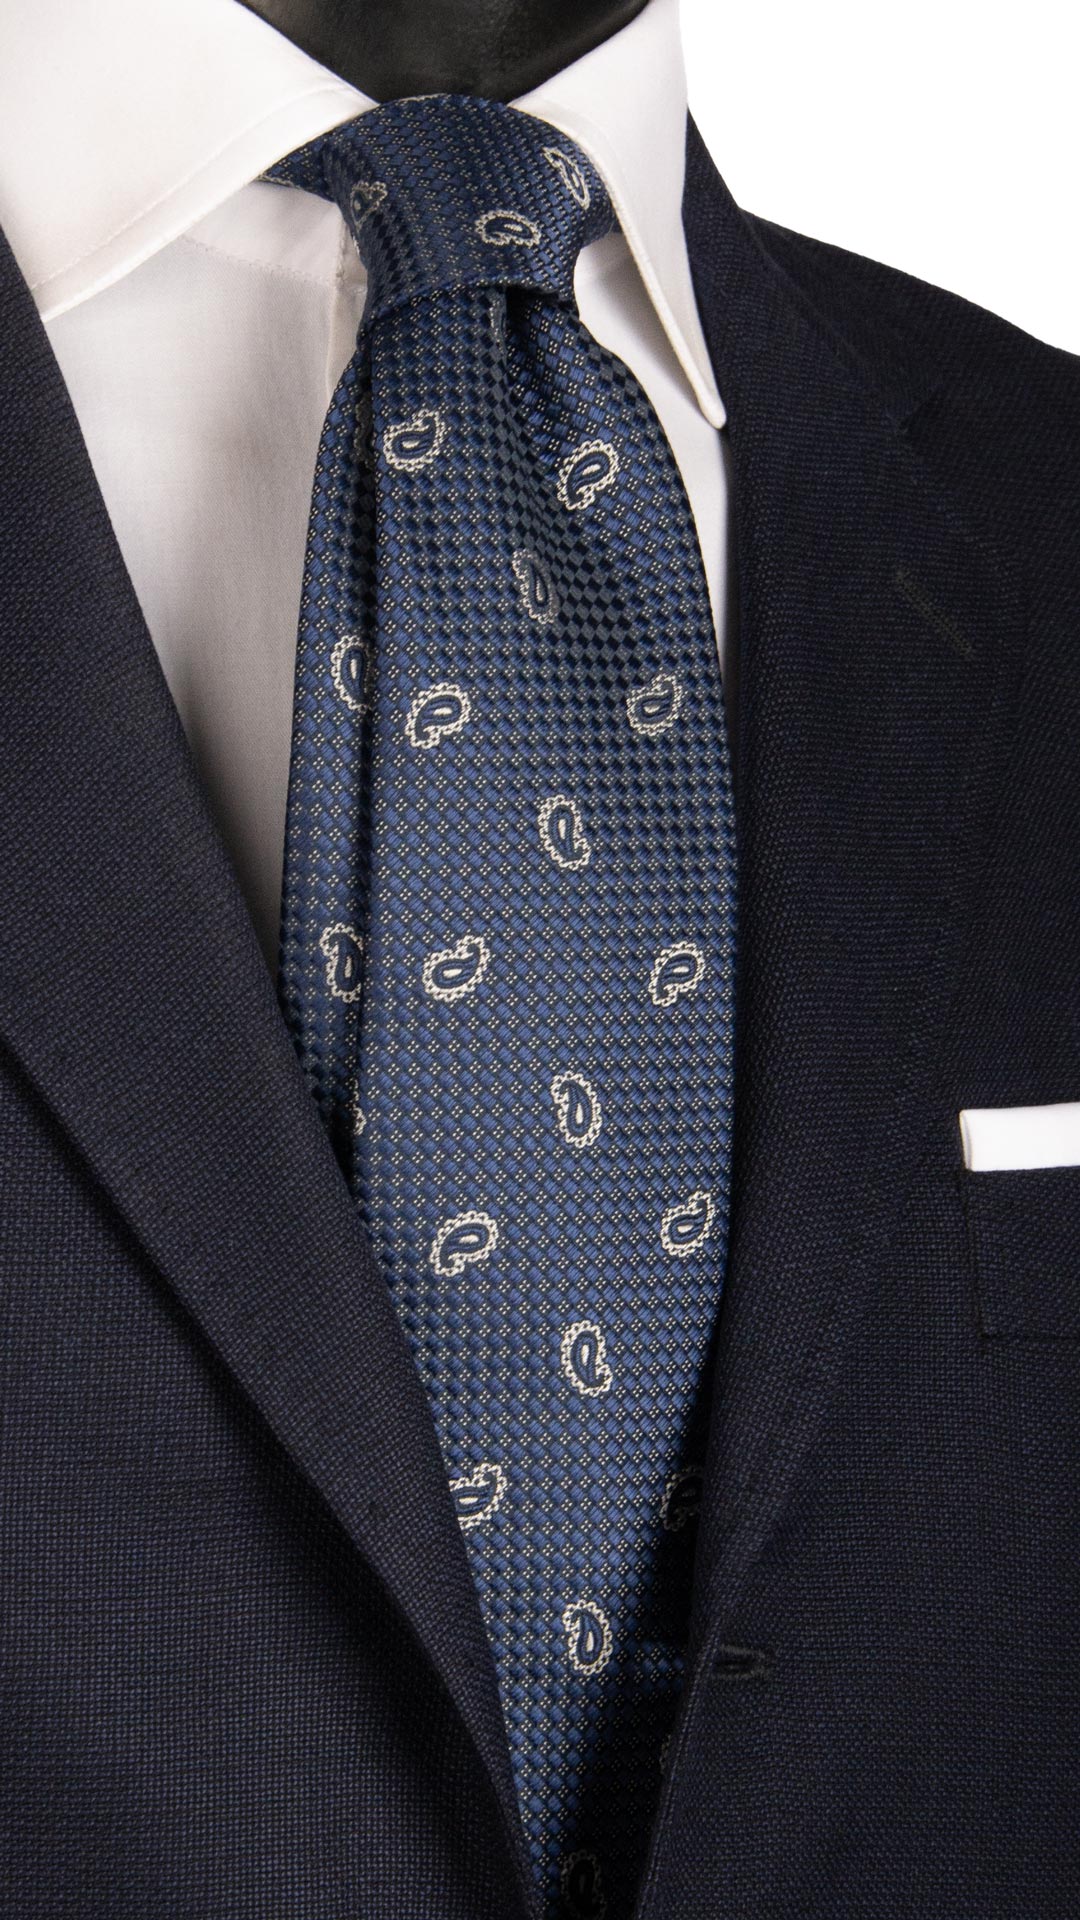 Cravatta da Cerimonia di Seta Blu Navy Paisley Tono su Tono Grigio Argento Made in italy Graffeo Cravatte